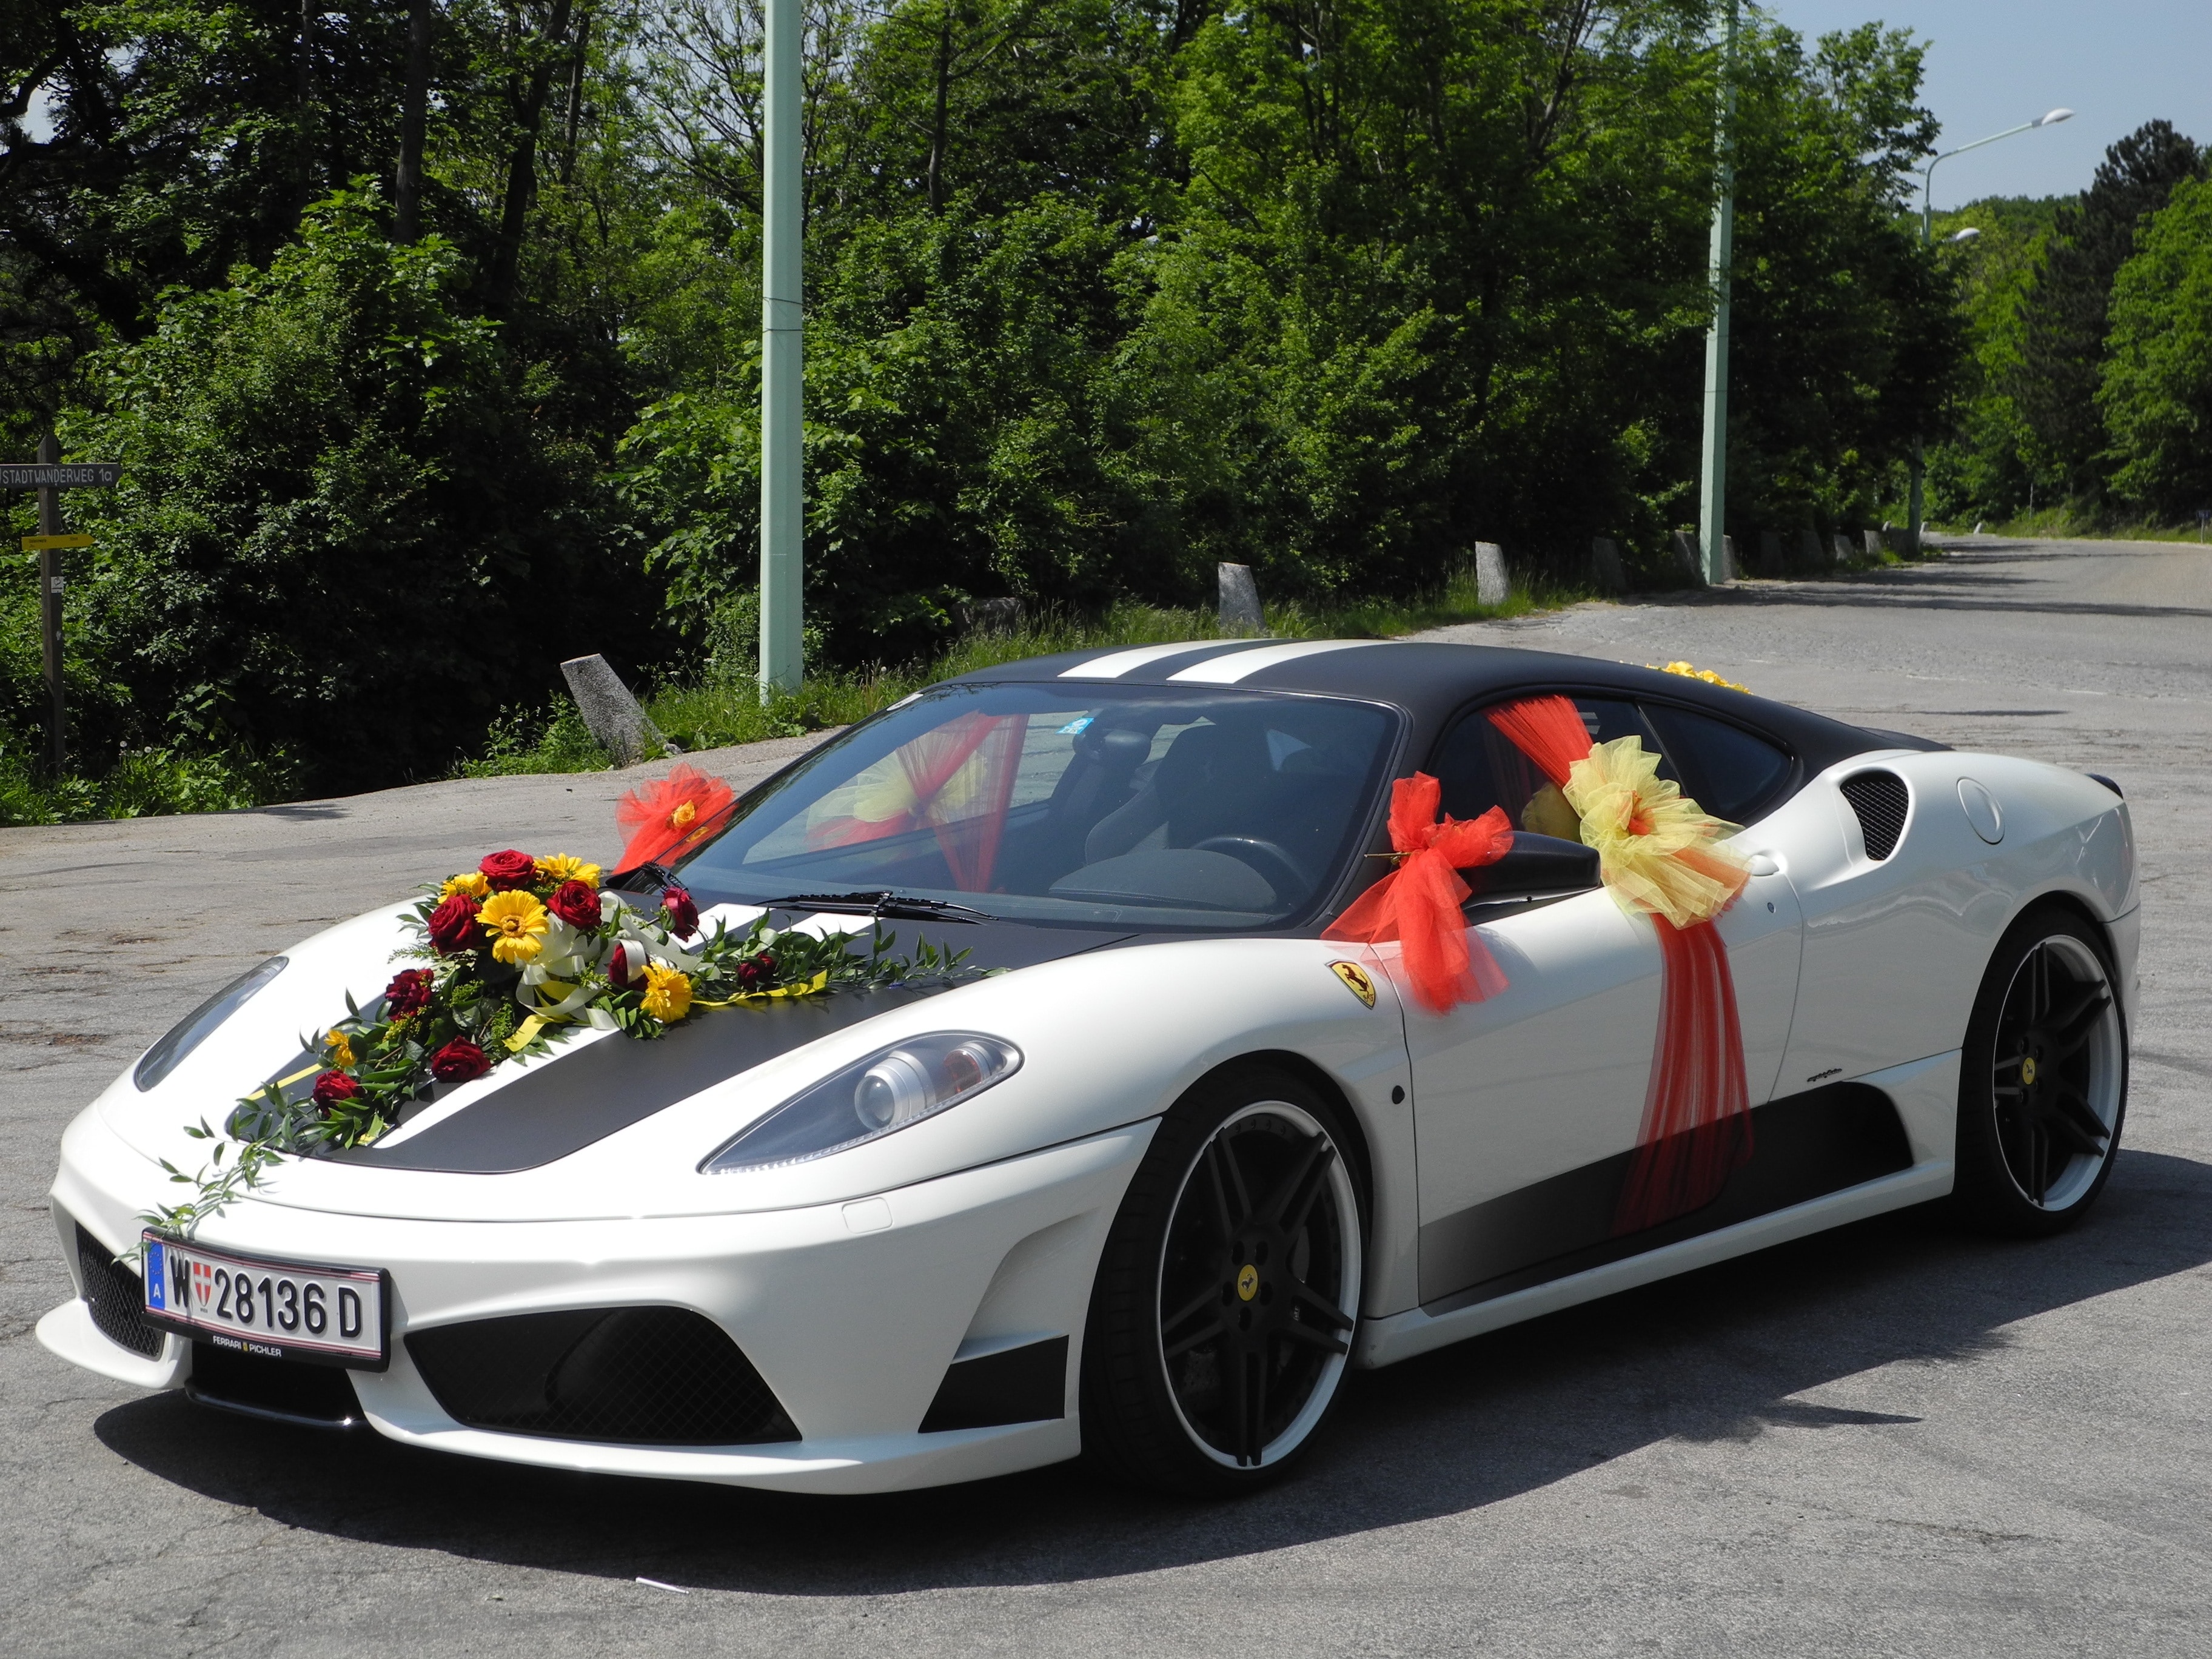 Auto, Wedding, Ferrari, Wedding Car, car, transportation